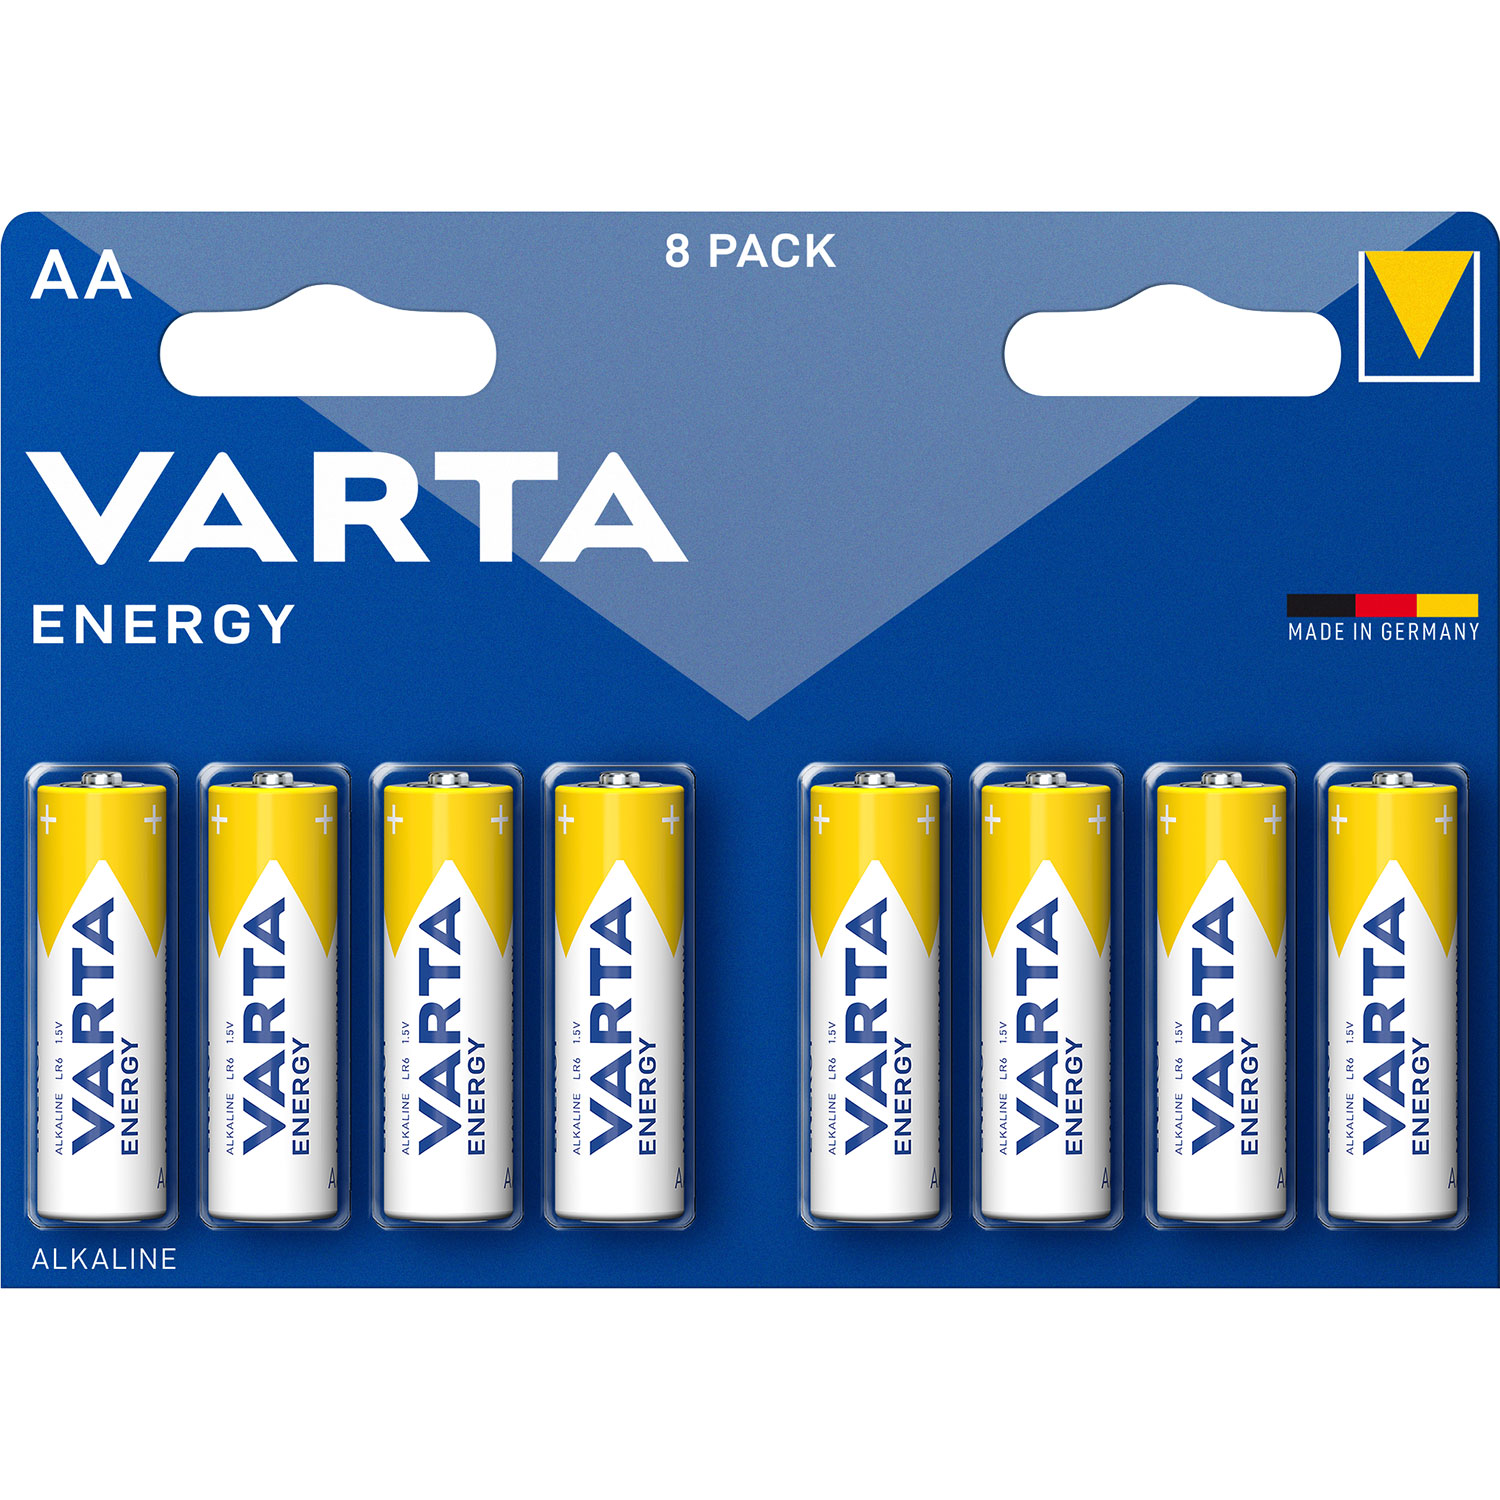 VARTA Energy Mignon AA Batterie 8 Stück